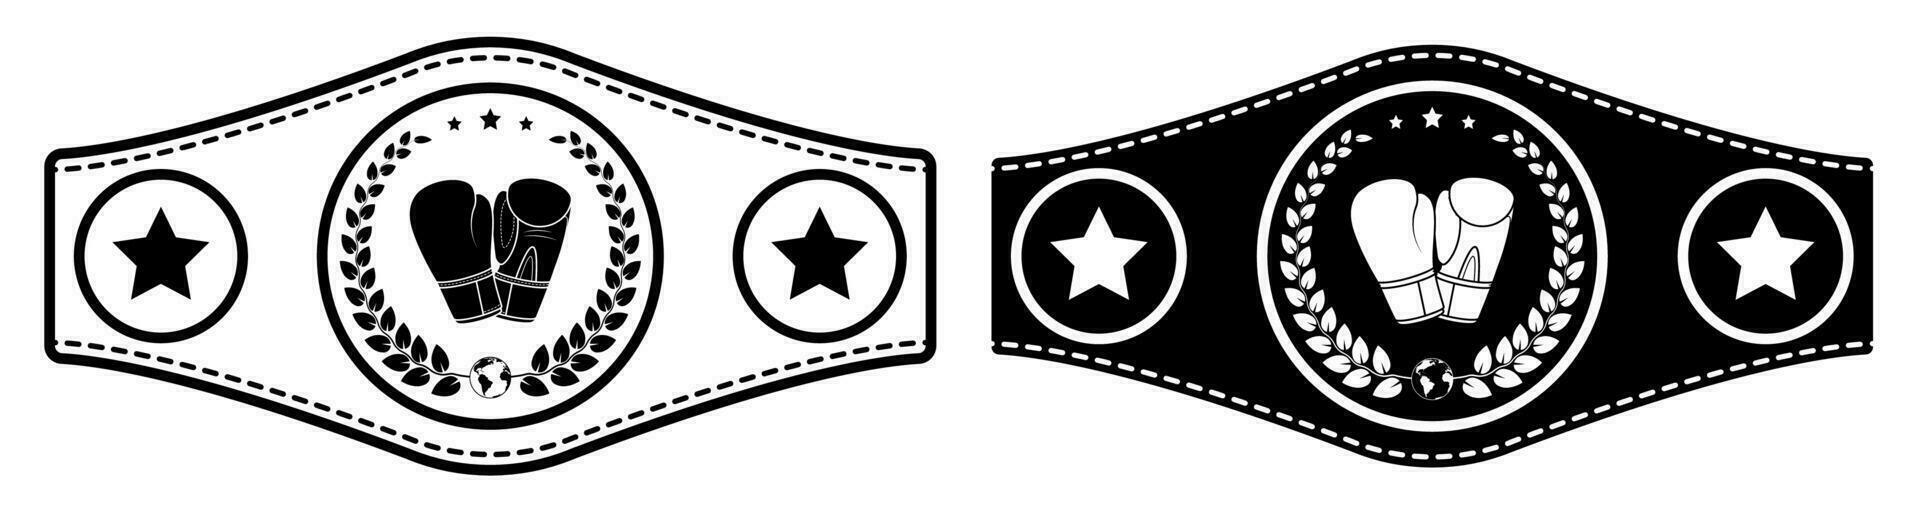 Symbol, Sport Gürtel von Boxen Champion, Kickboxen Turnier Gewinner mit Handschuhe und Lorbeer Kranz Emblem im Center. Vektor